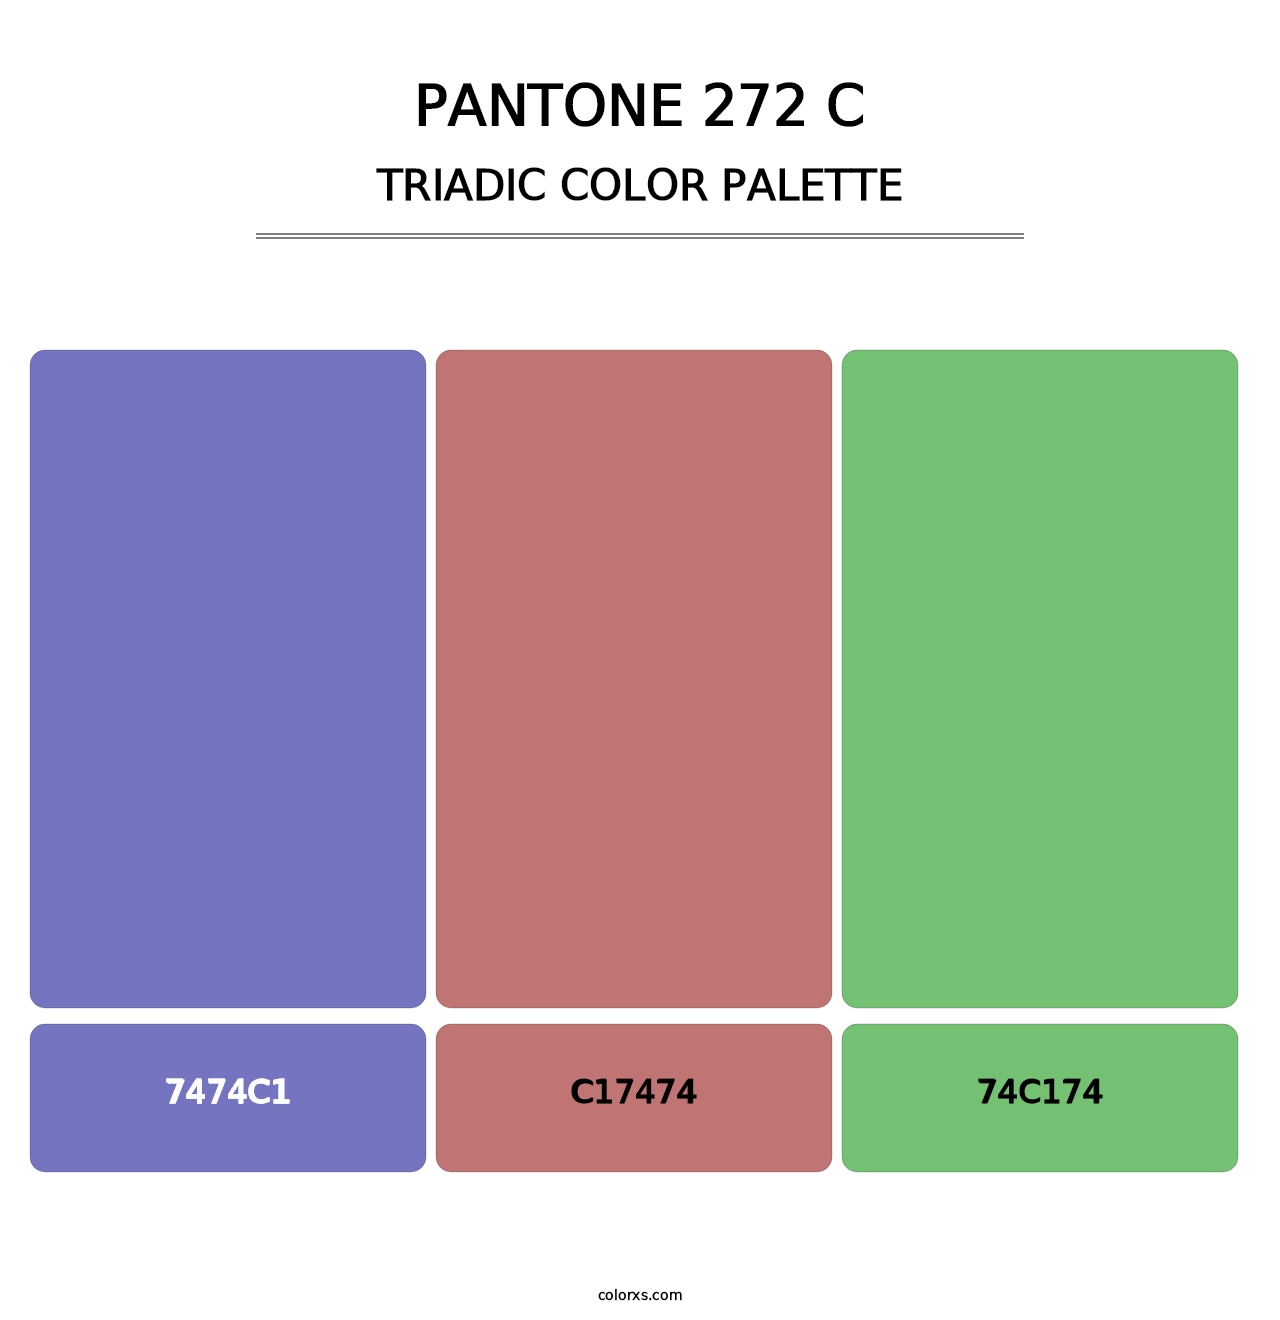 PANTONE 272 C - Triadic Color Palette